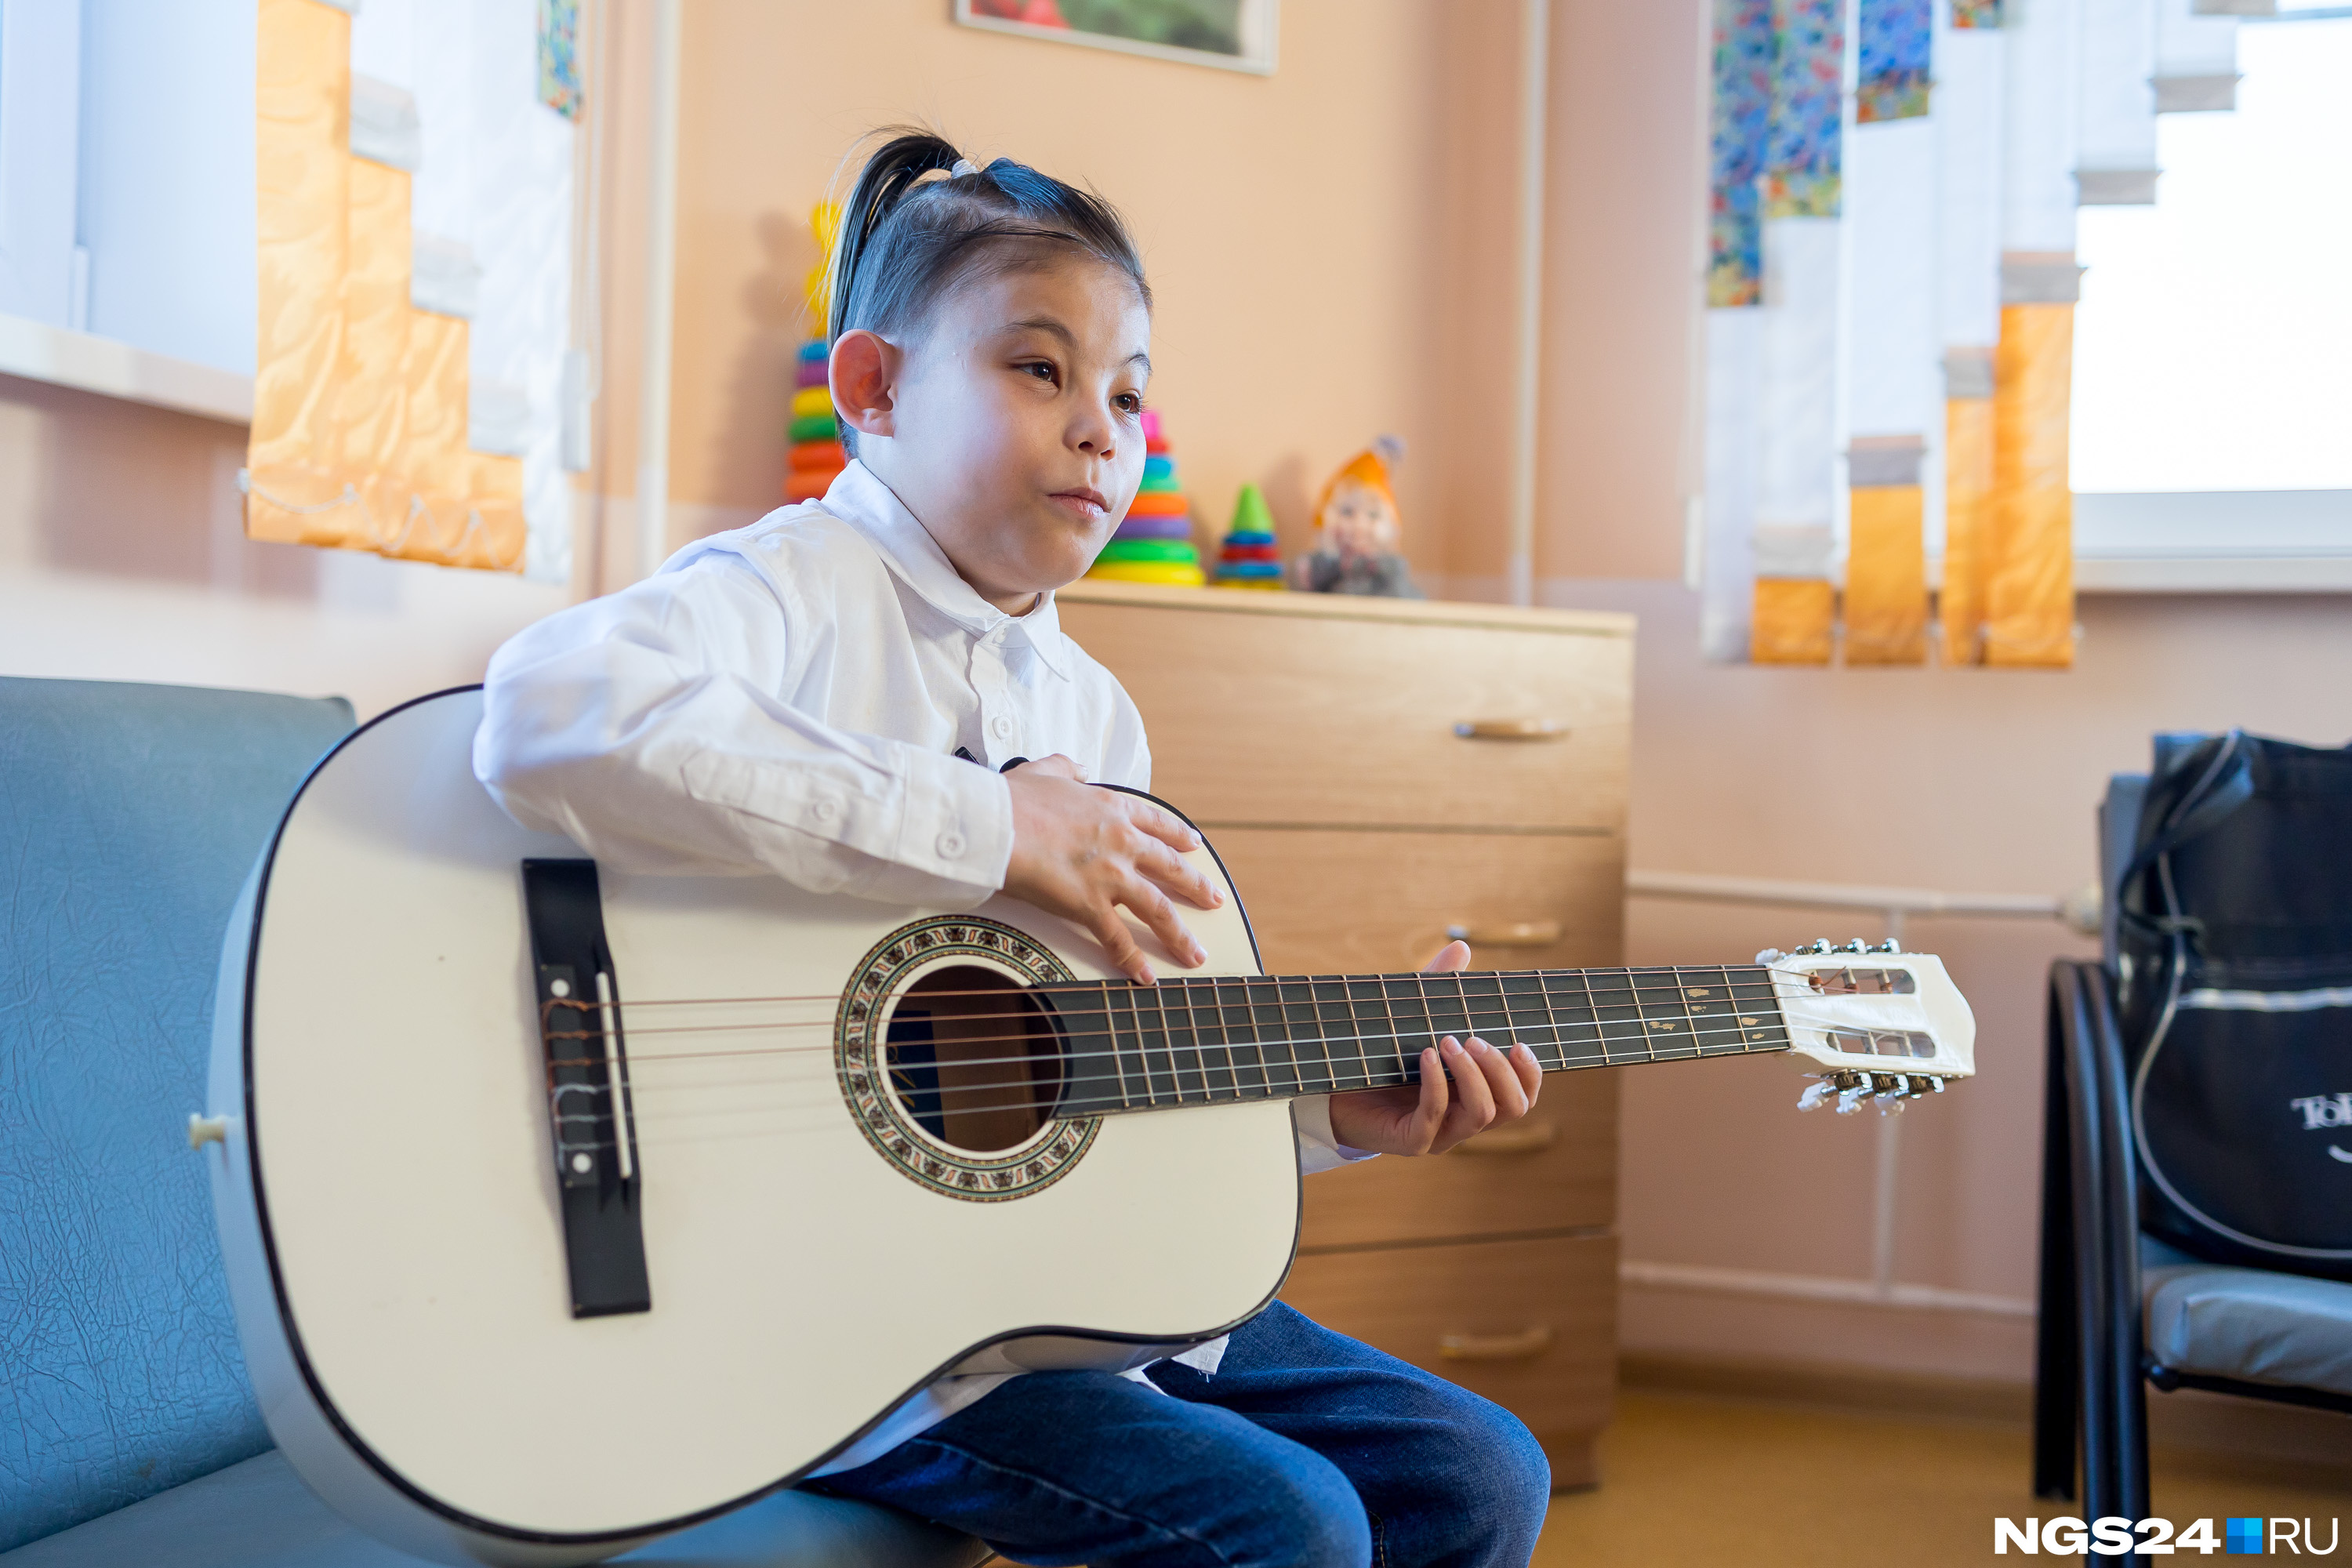 Волонтер Сардана купила Вове гитару и учит его играть на ней